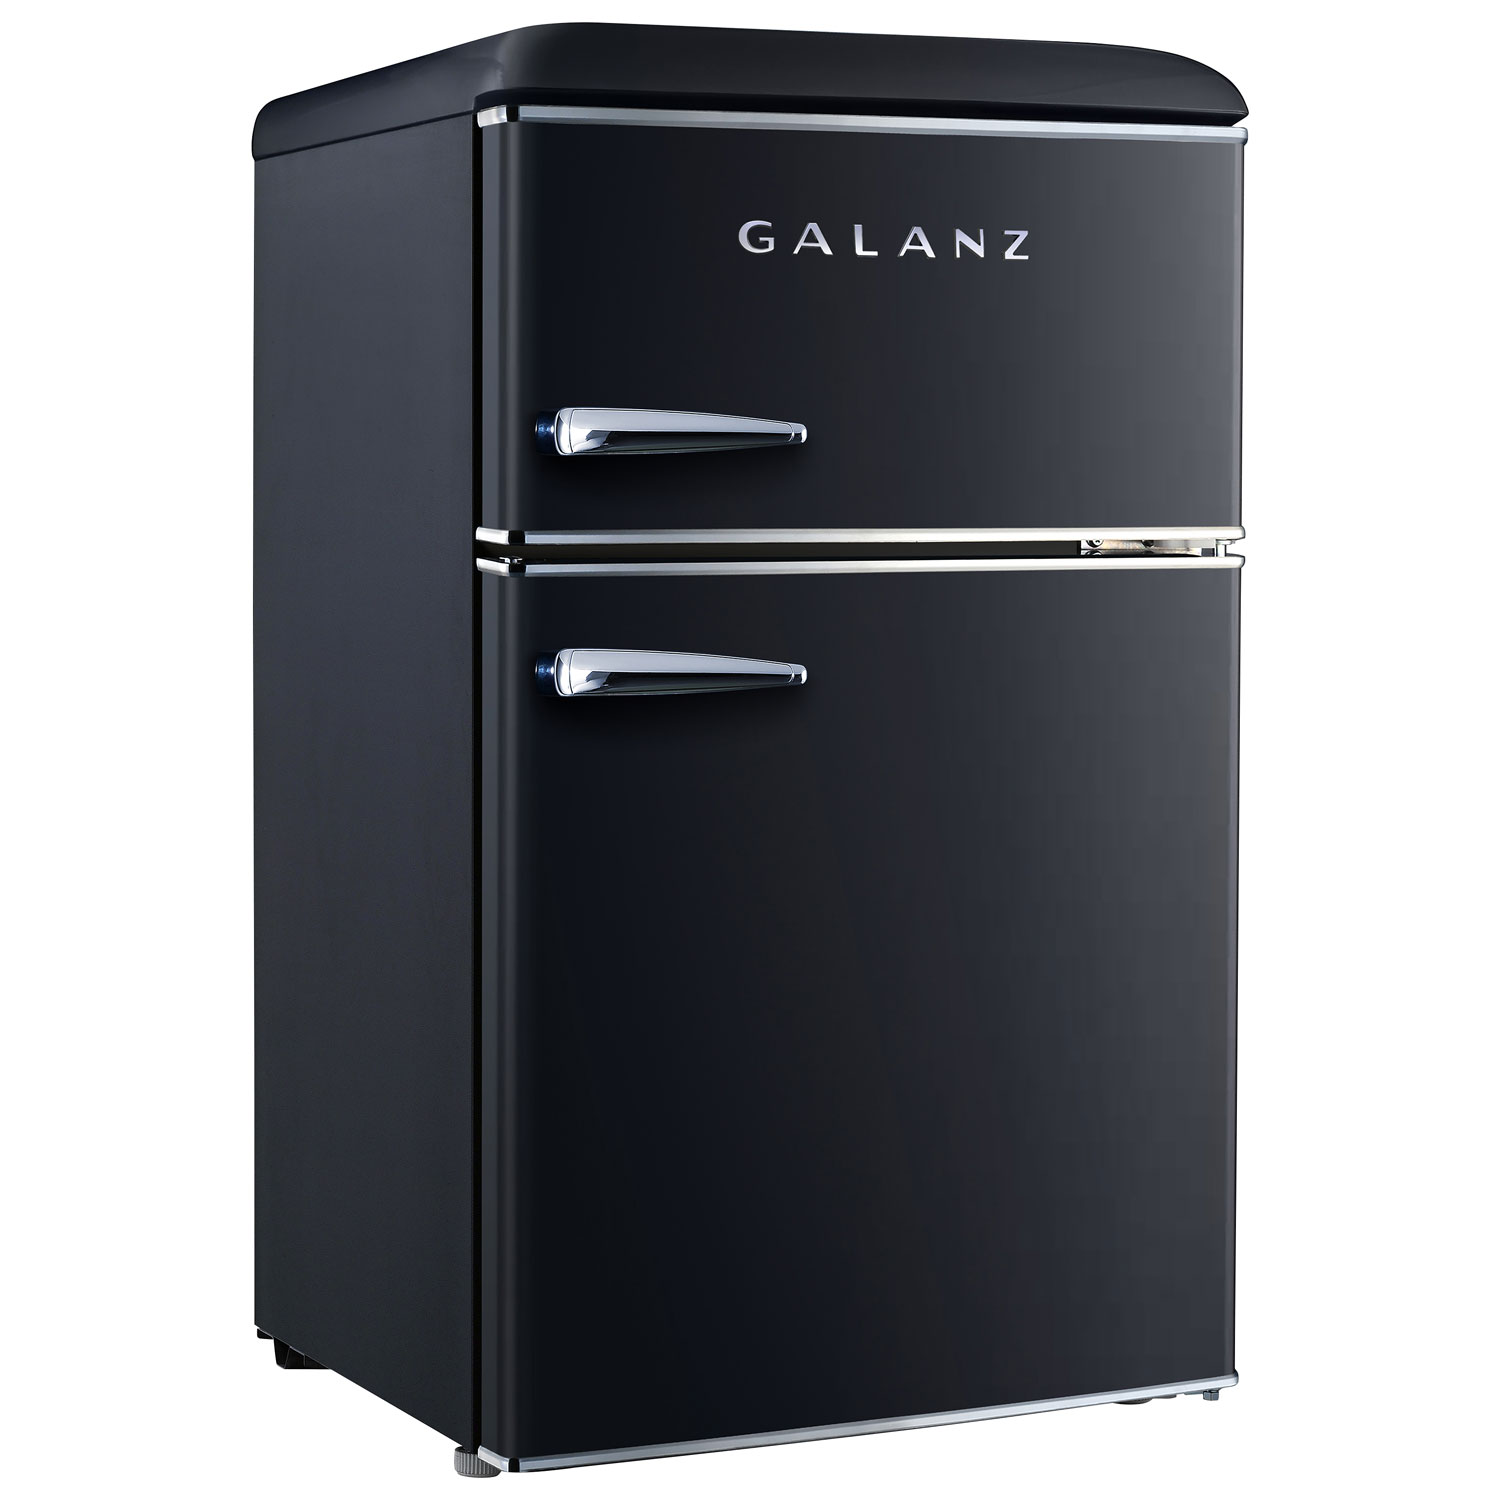 Galanz 3.1 Cu. Ft. Freestanding Top Freezer Retro Bar Fridge (GLR31TBKER) - Black